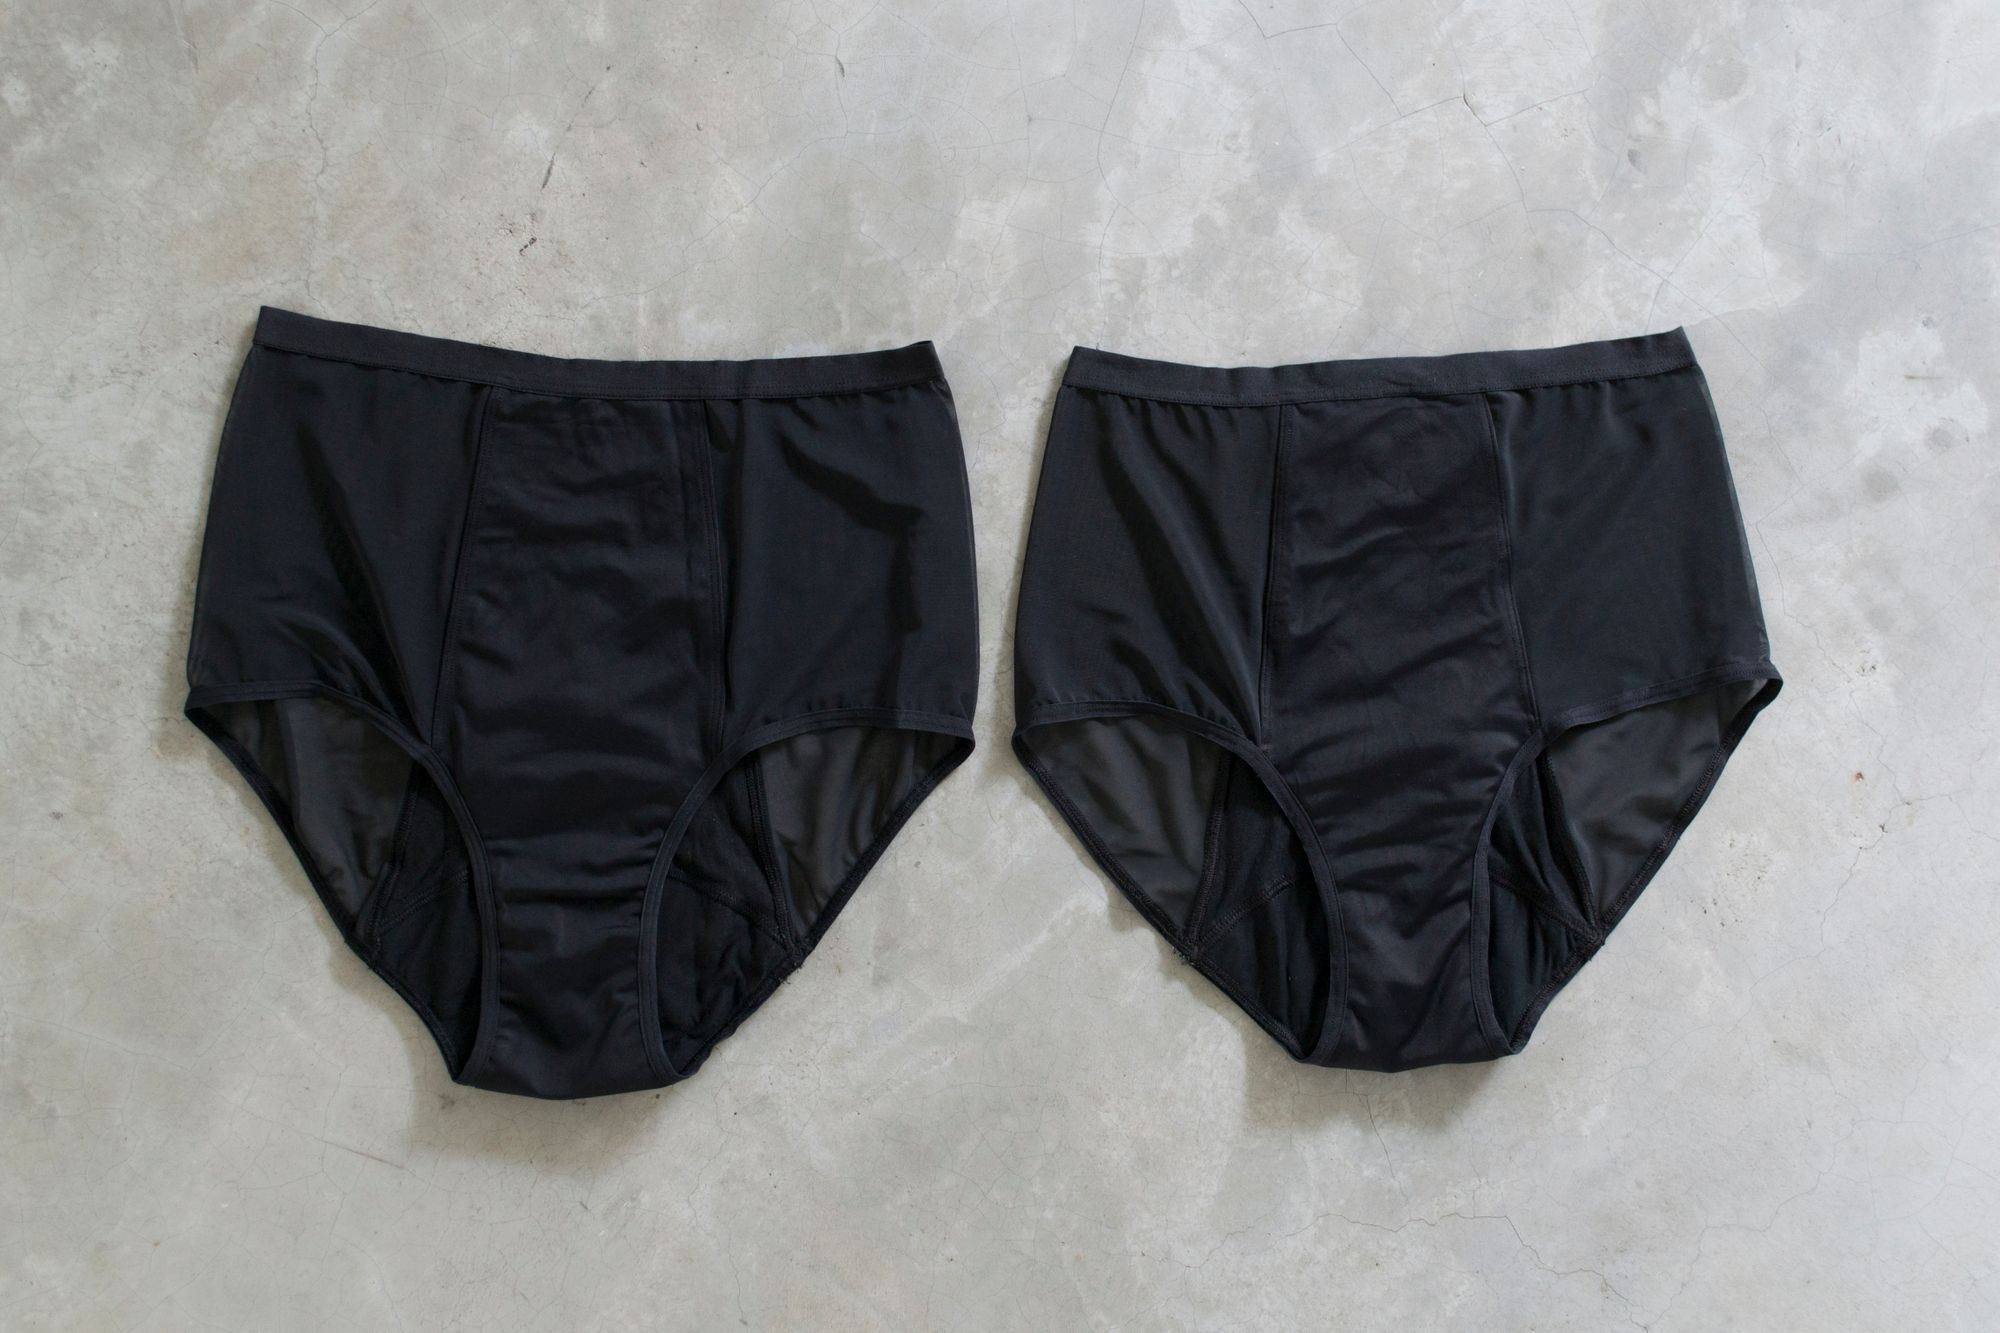 thinx underwear in stores Online Sale, UP TO 55% OFF